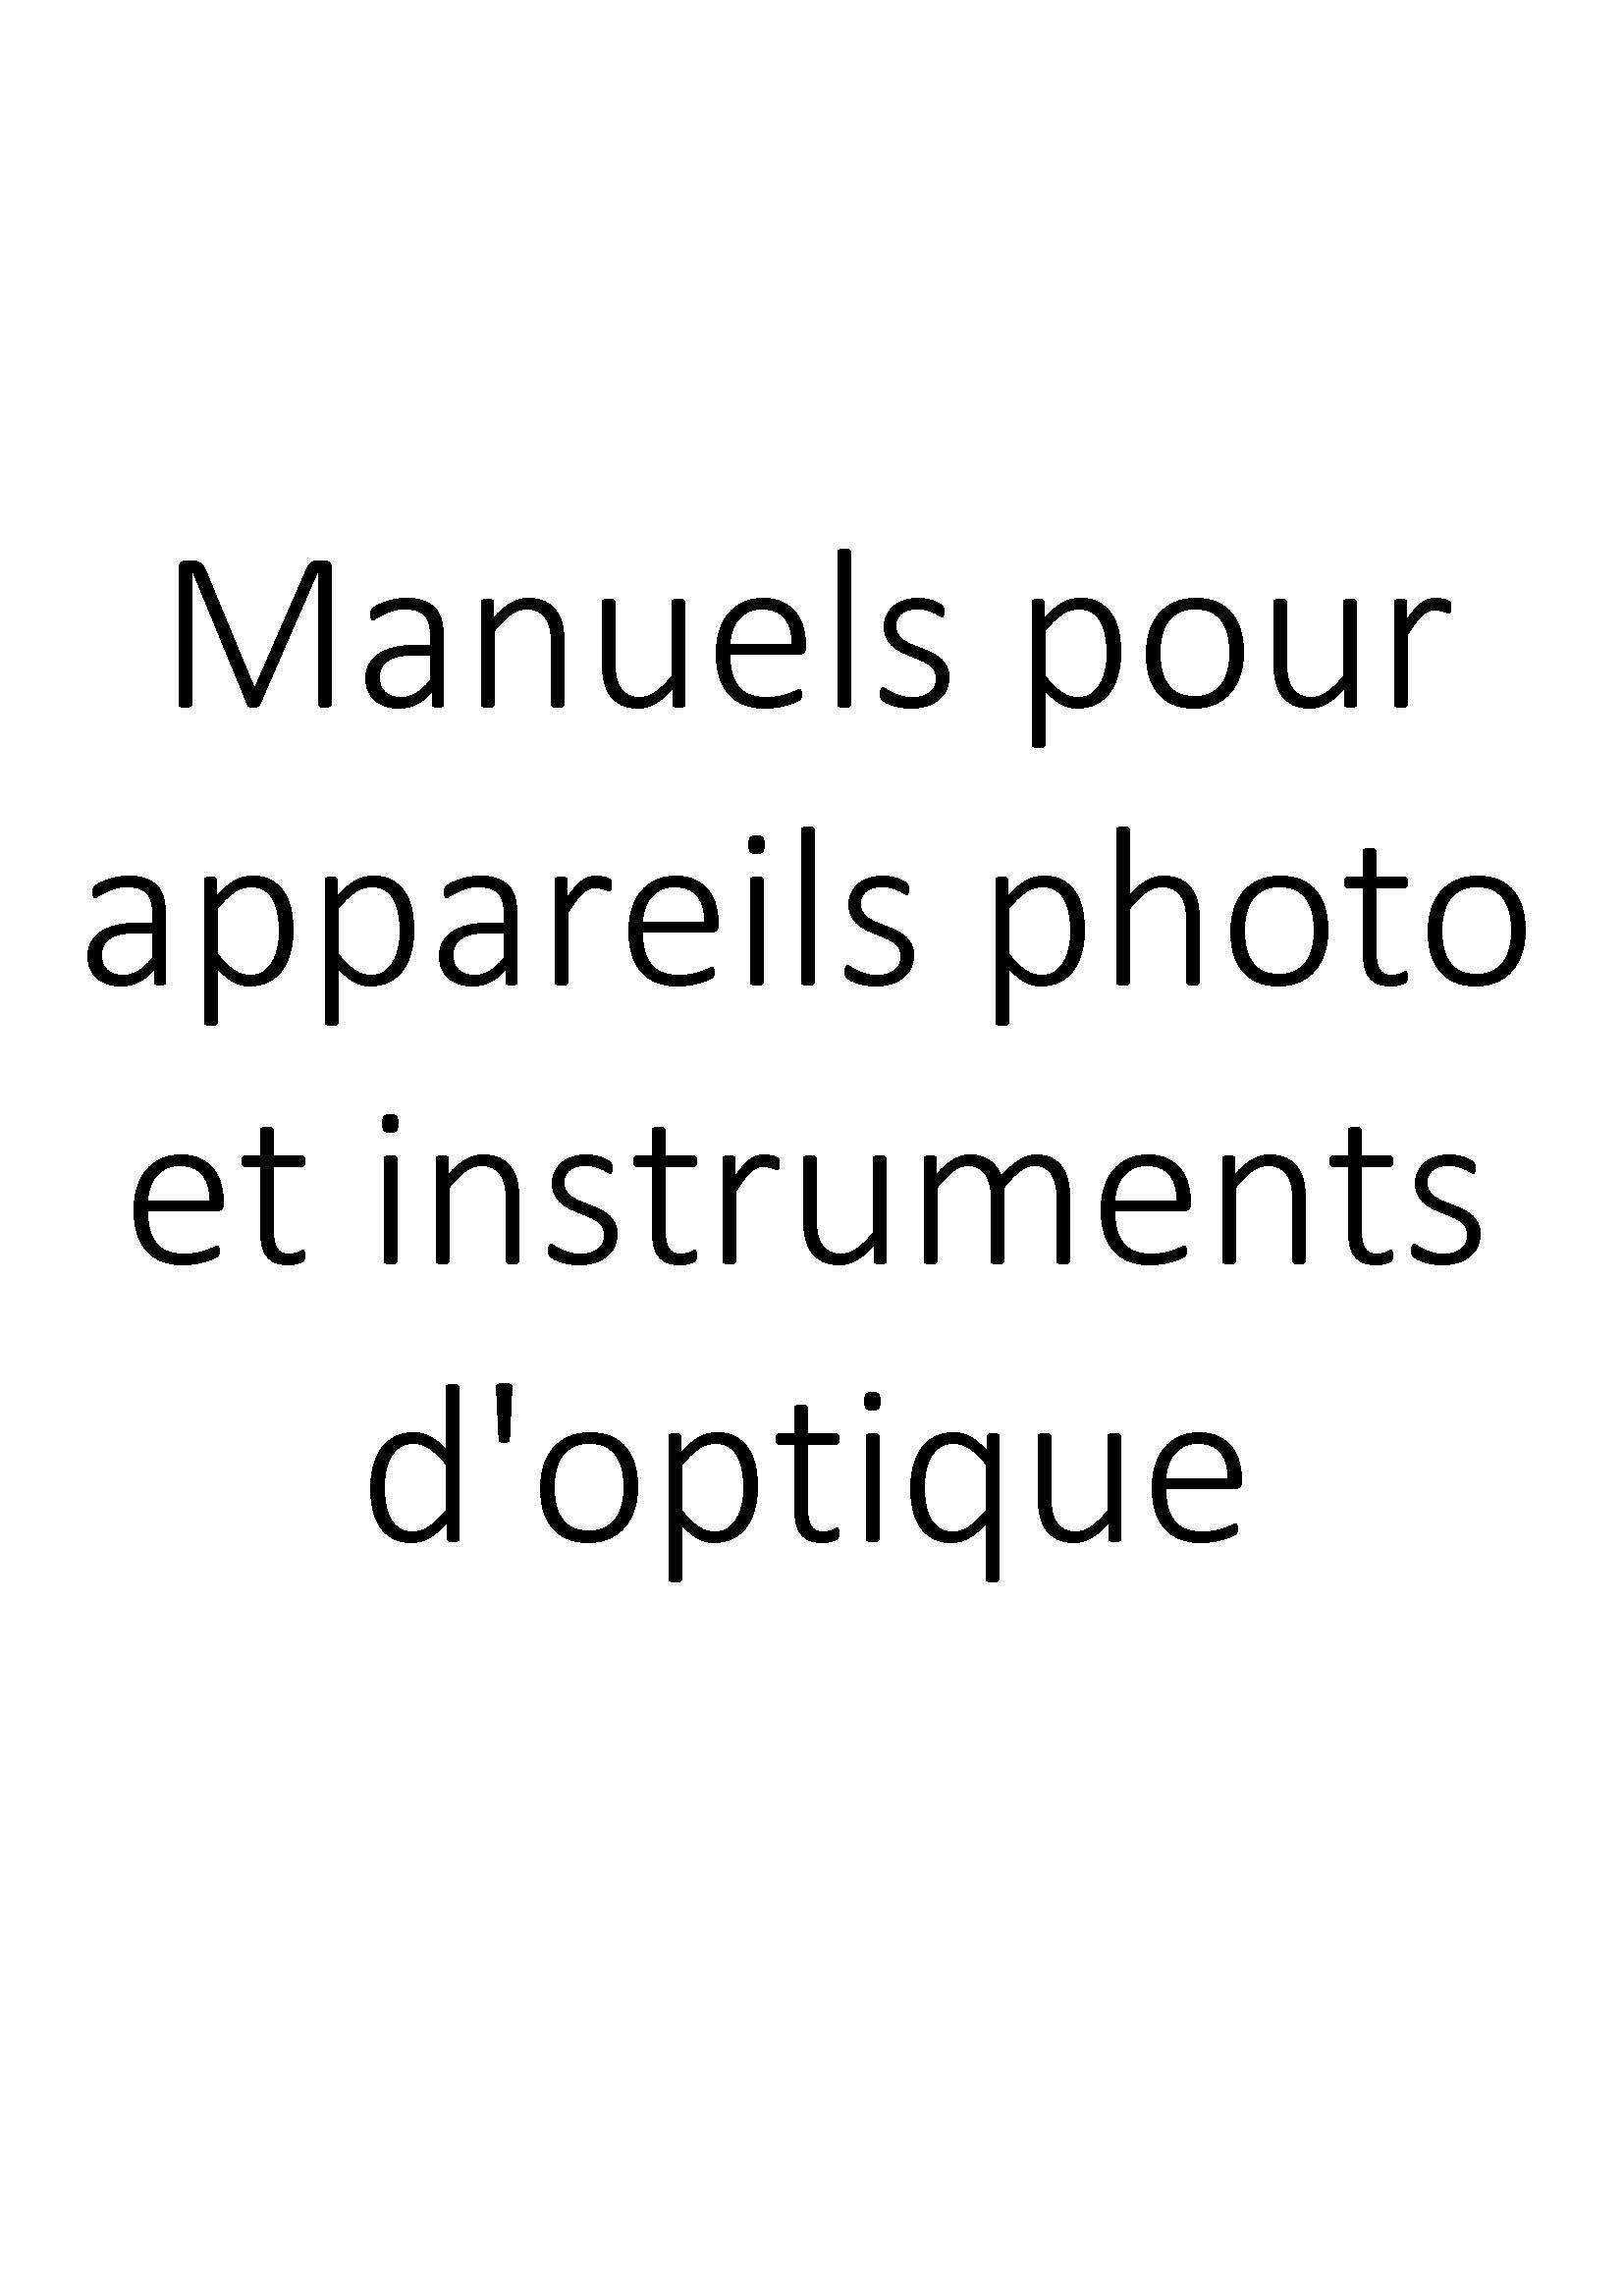 Manuels pour appareils photo et instruments d'optique clicktofournisseur.com